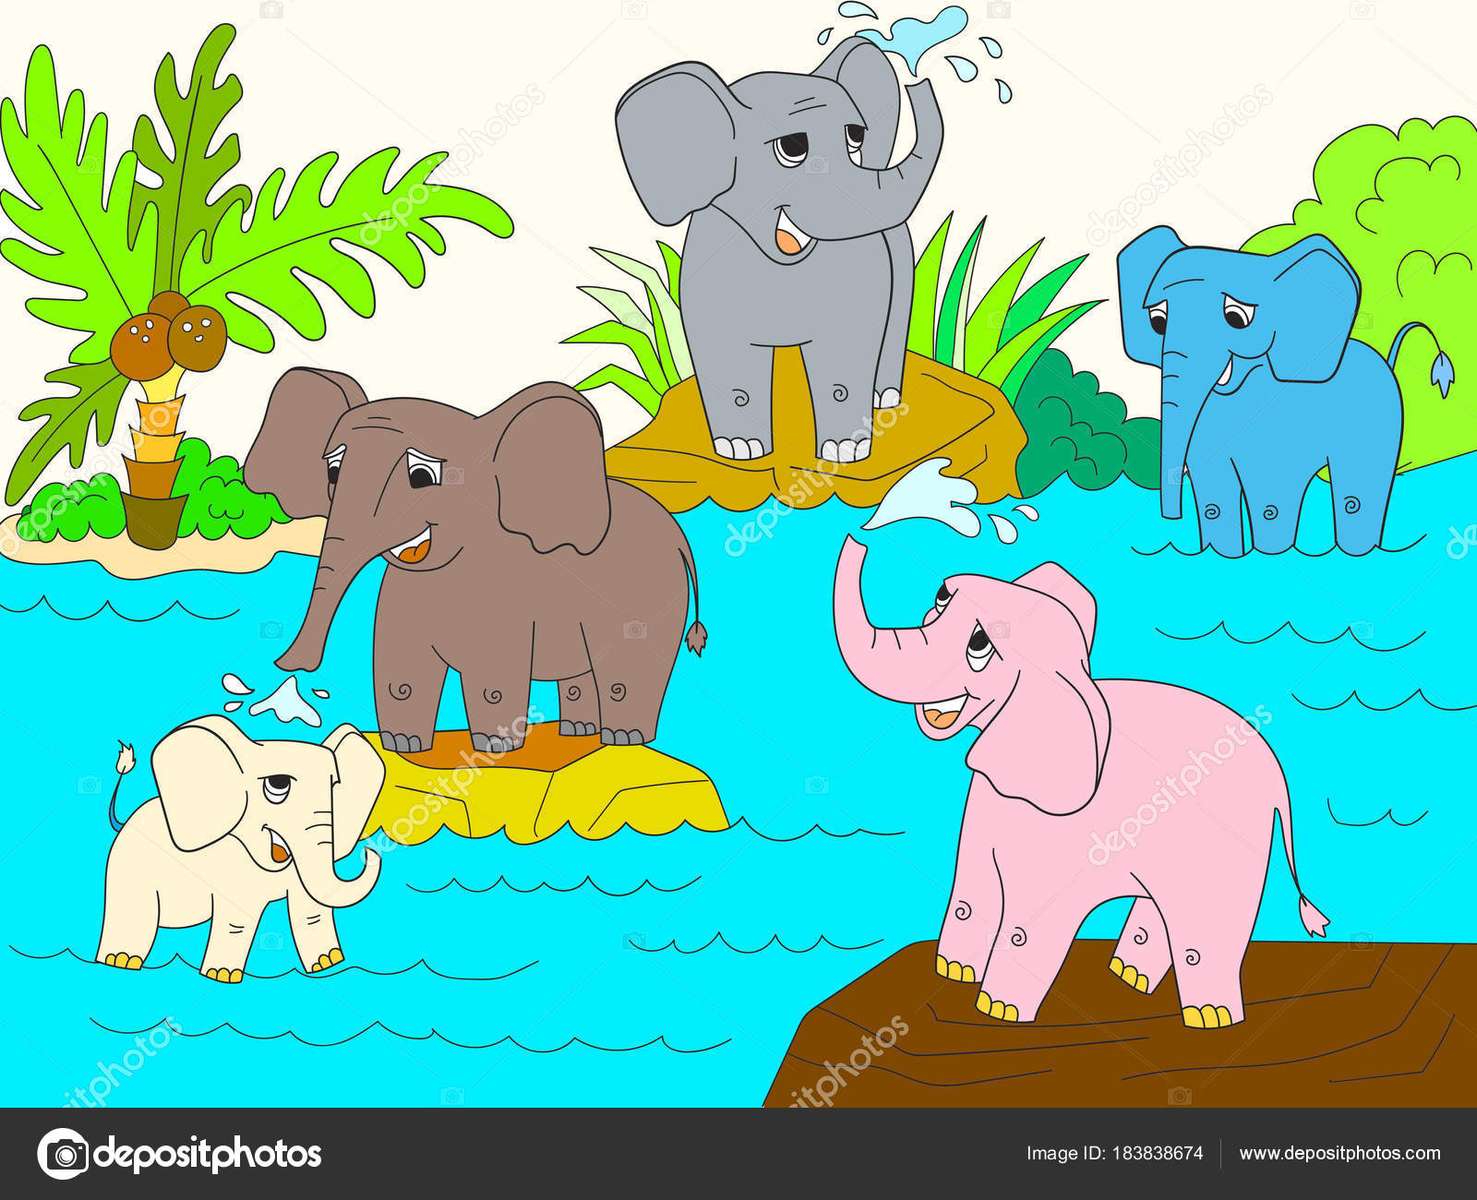 Elefante bébé puzzle online a partir de fotografia